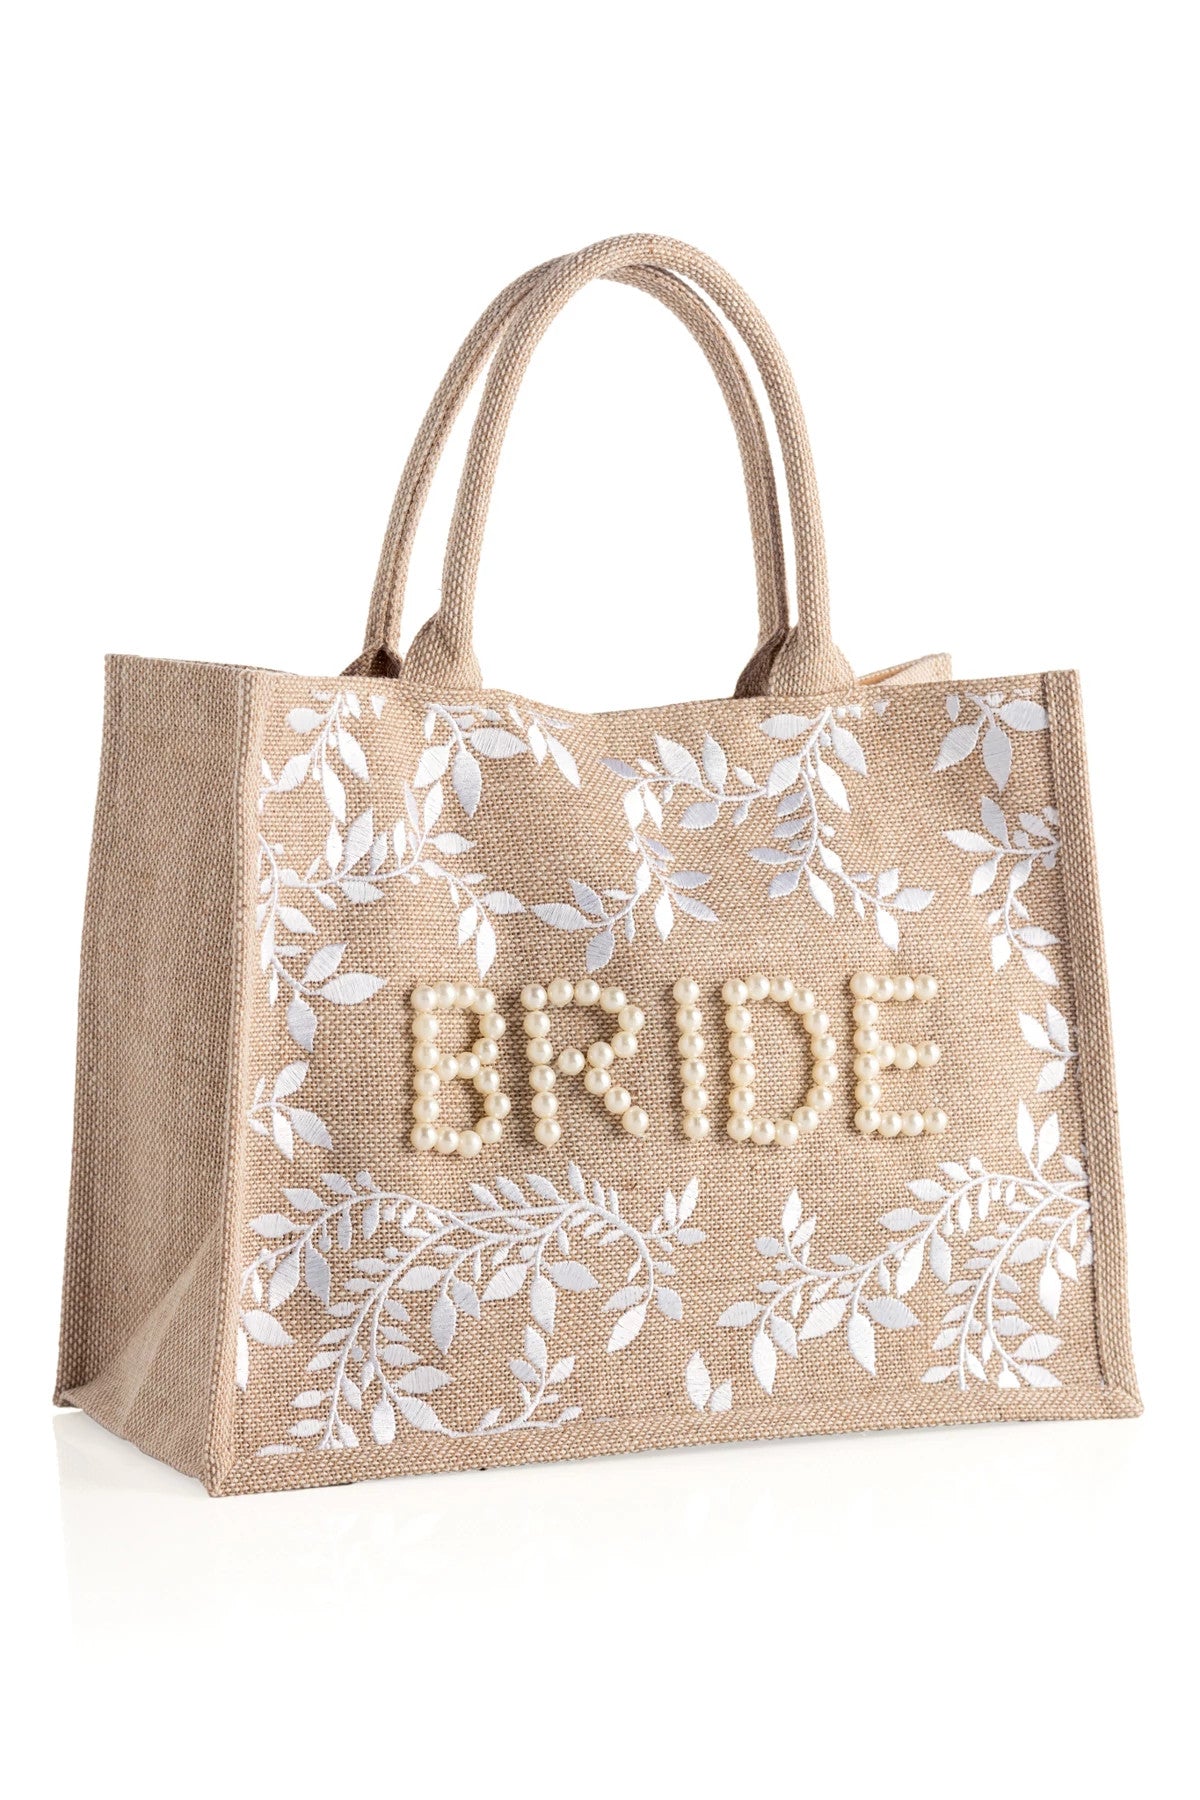 01-BK-009NA Shiraleah Bride Tote Bag